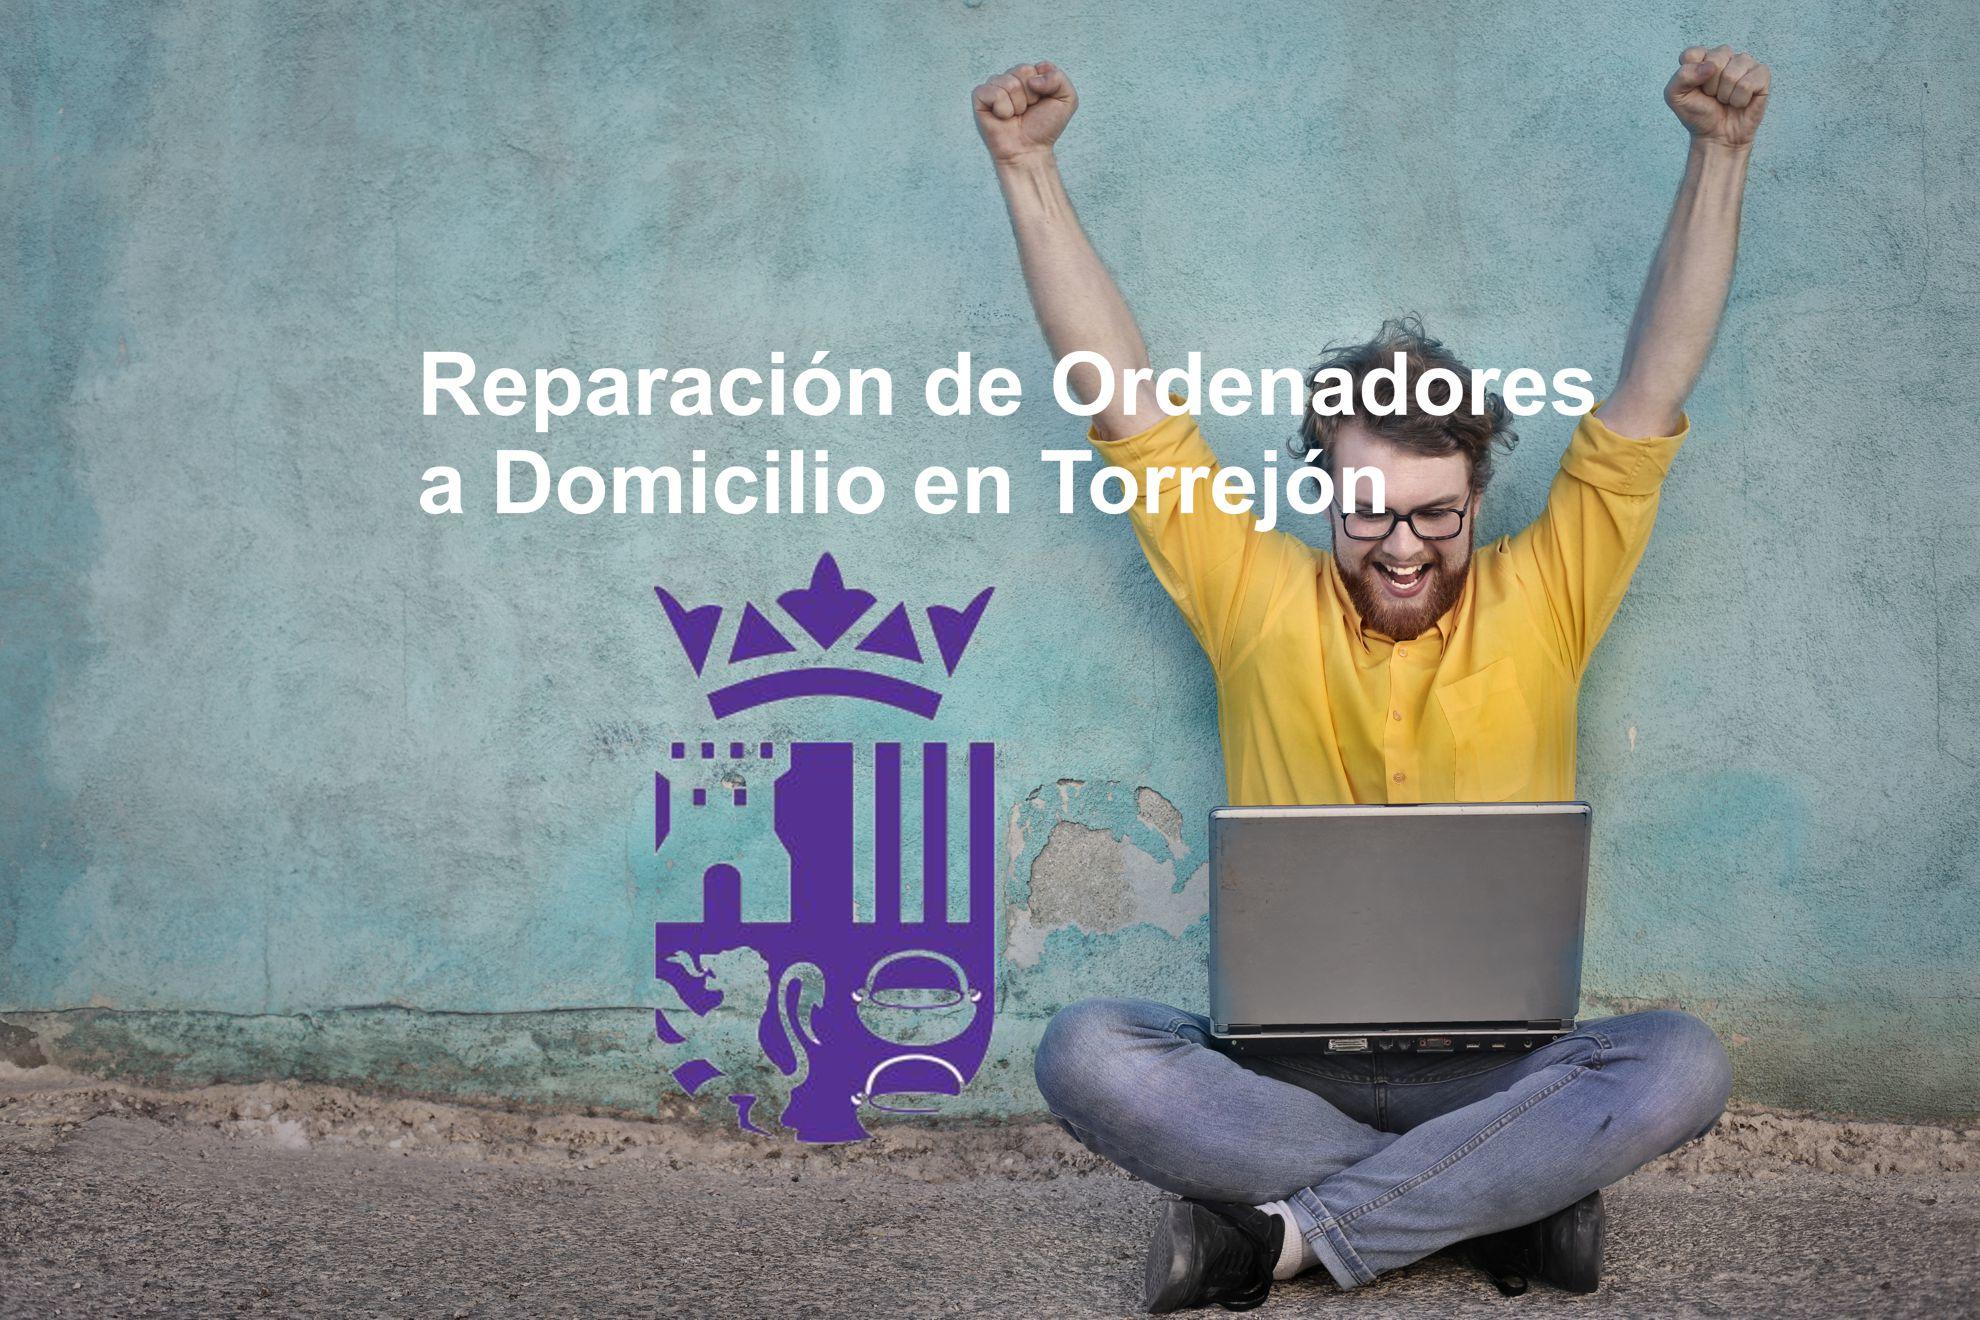 Reparación de Ordenadores a Domicilio en Torrejon